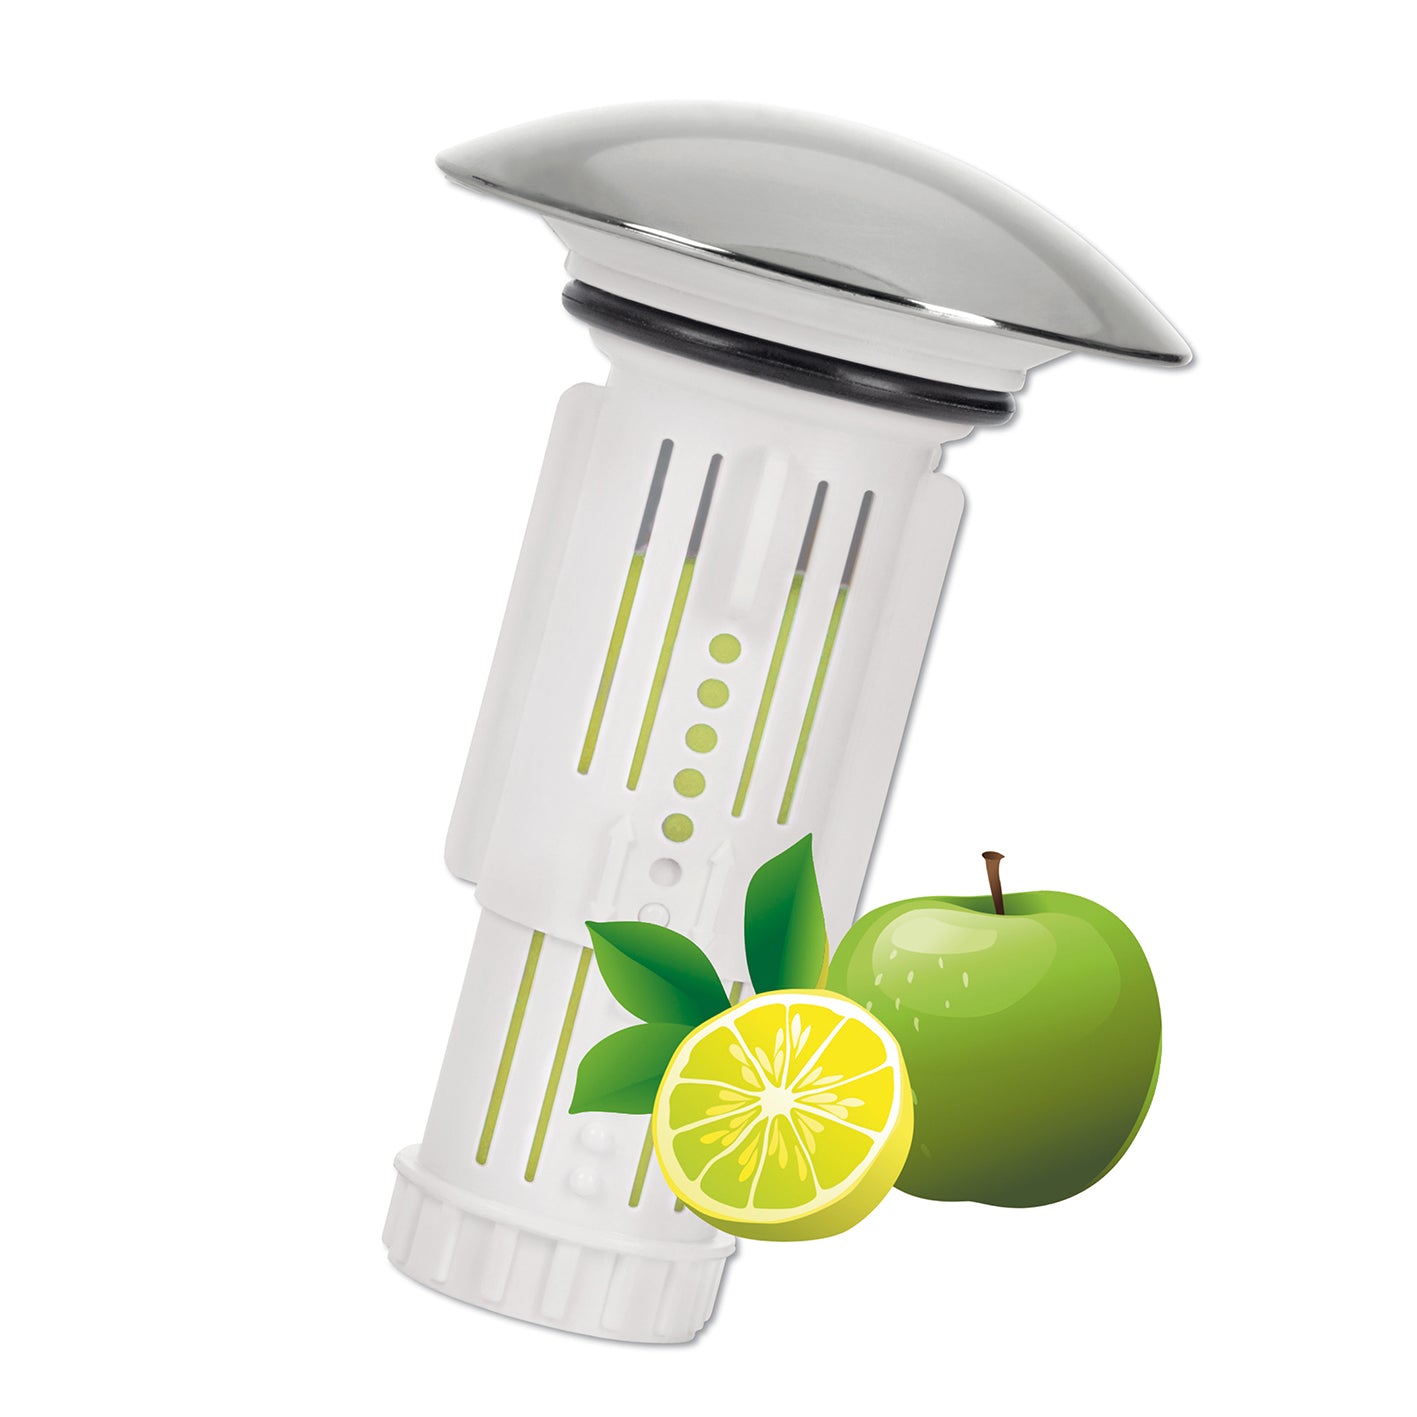 Abfluss-Fee Waschbecken Verschlussstopfen & Duftstein Zitrone/Apfel